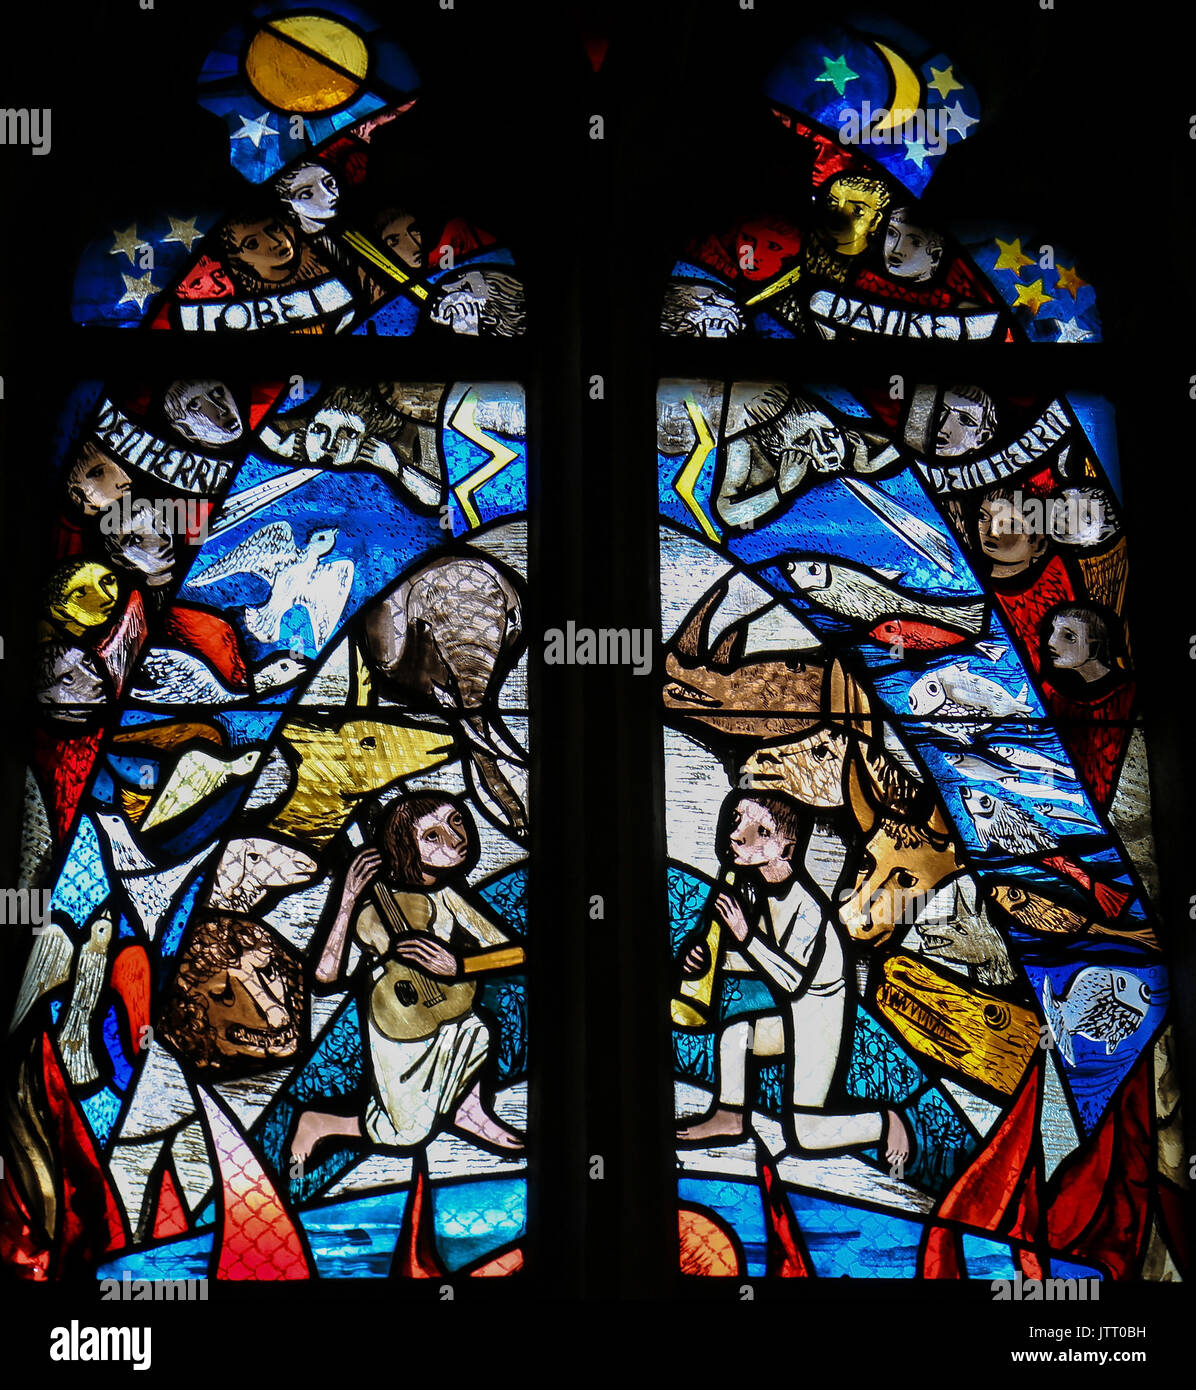 Glasmalereien in der Stiftskirche in Tübingen, die Schaffung von Arbeitsplätzen, mit Vögeln, Fischen, Säugetieren en zwei Kinder Musik wiedergeben Stockfoto